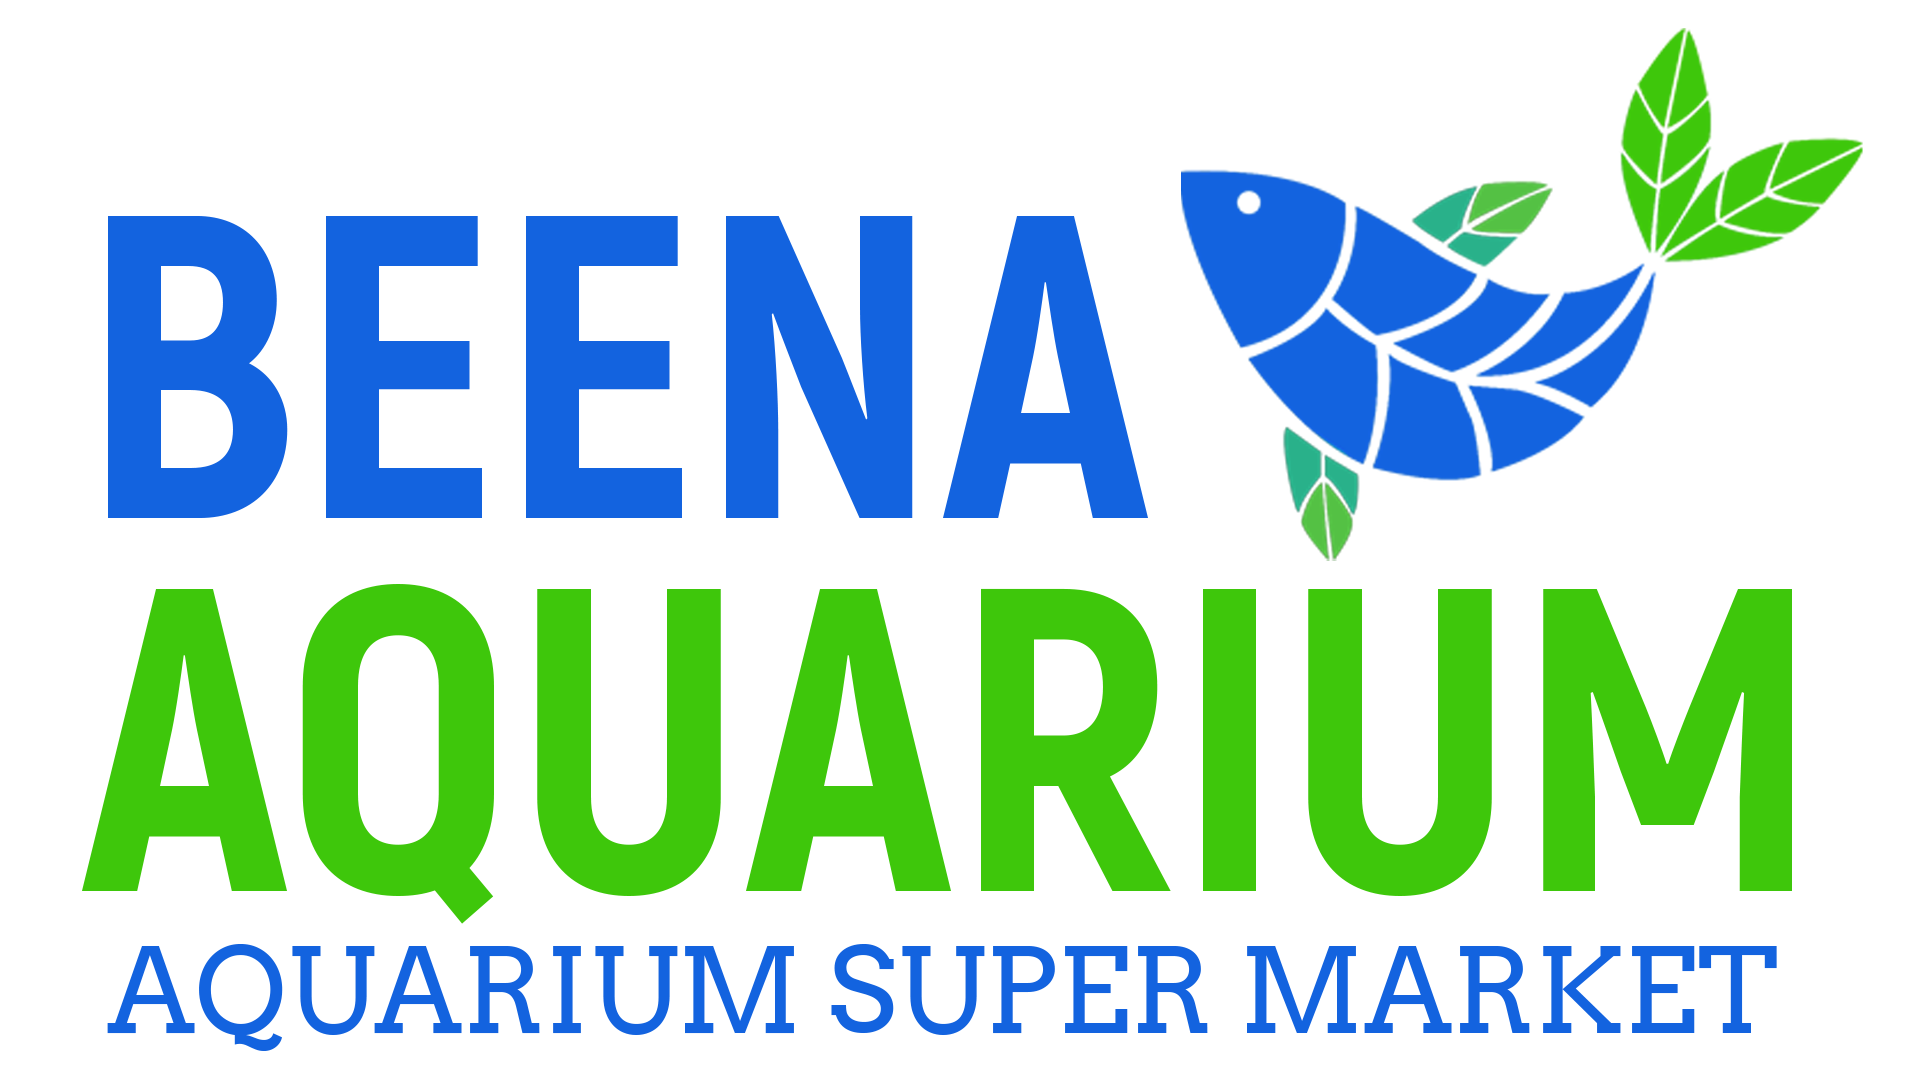 Beena Aquarium - Aquarium Super Market in India